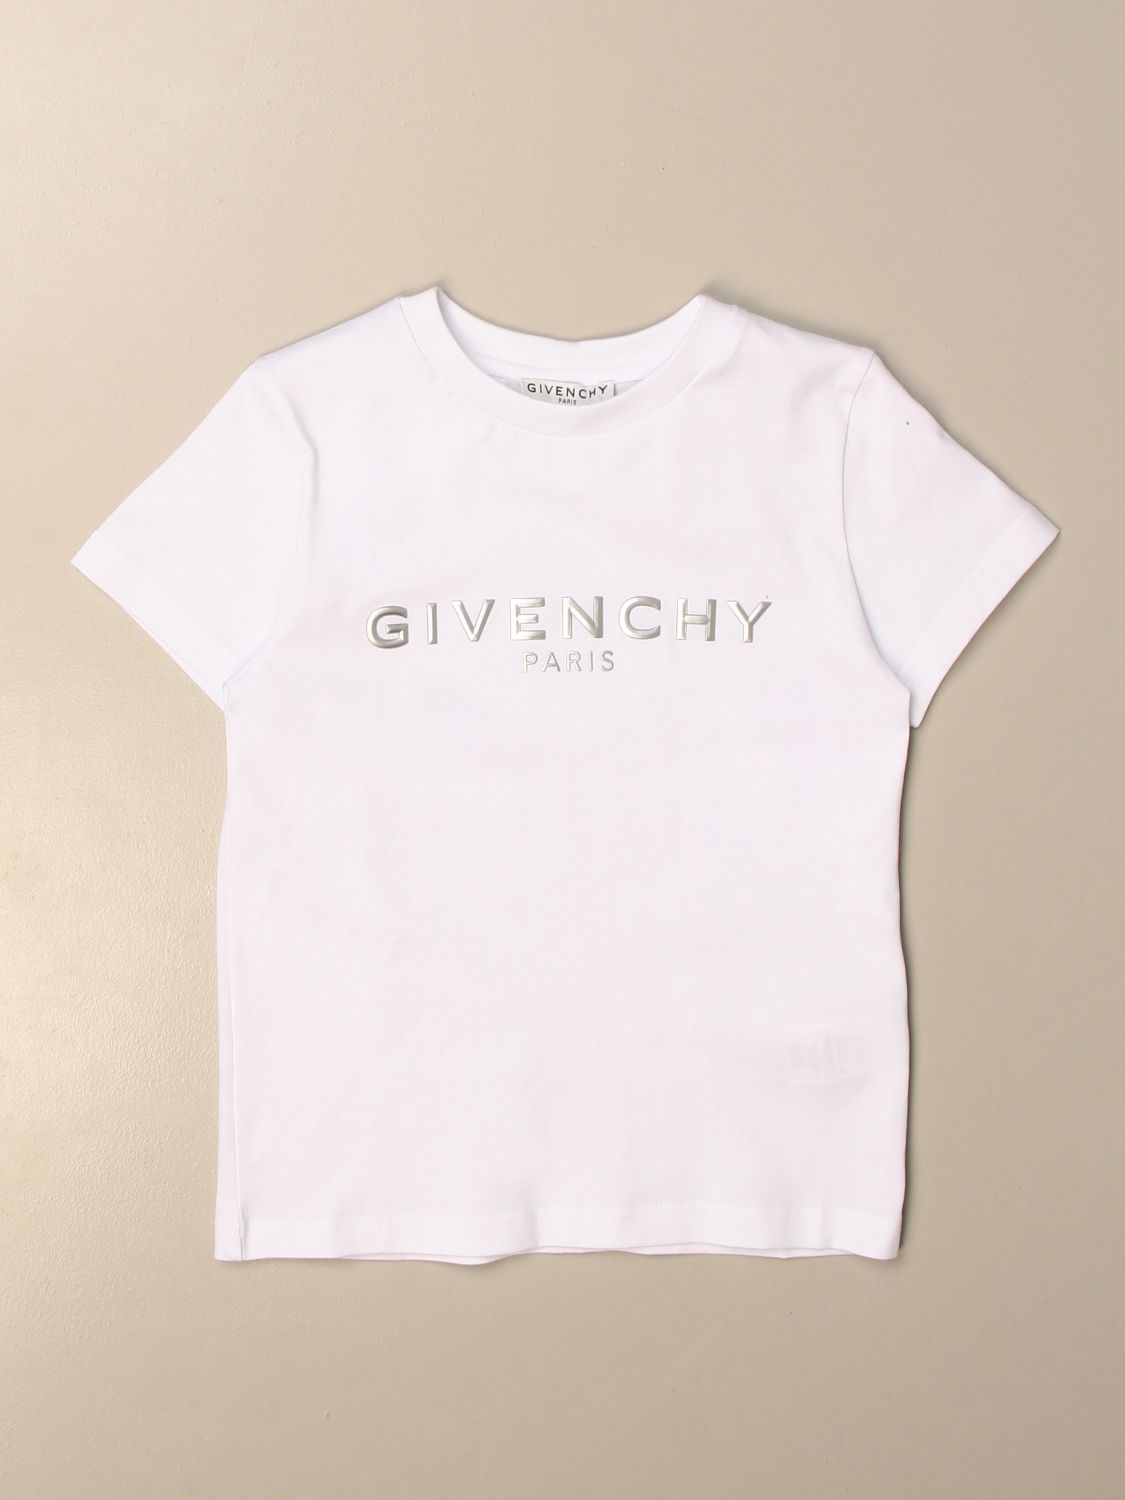 givenchy toddler shirt